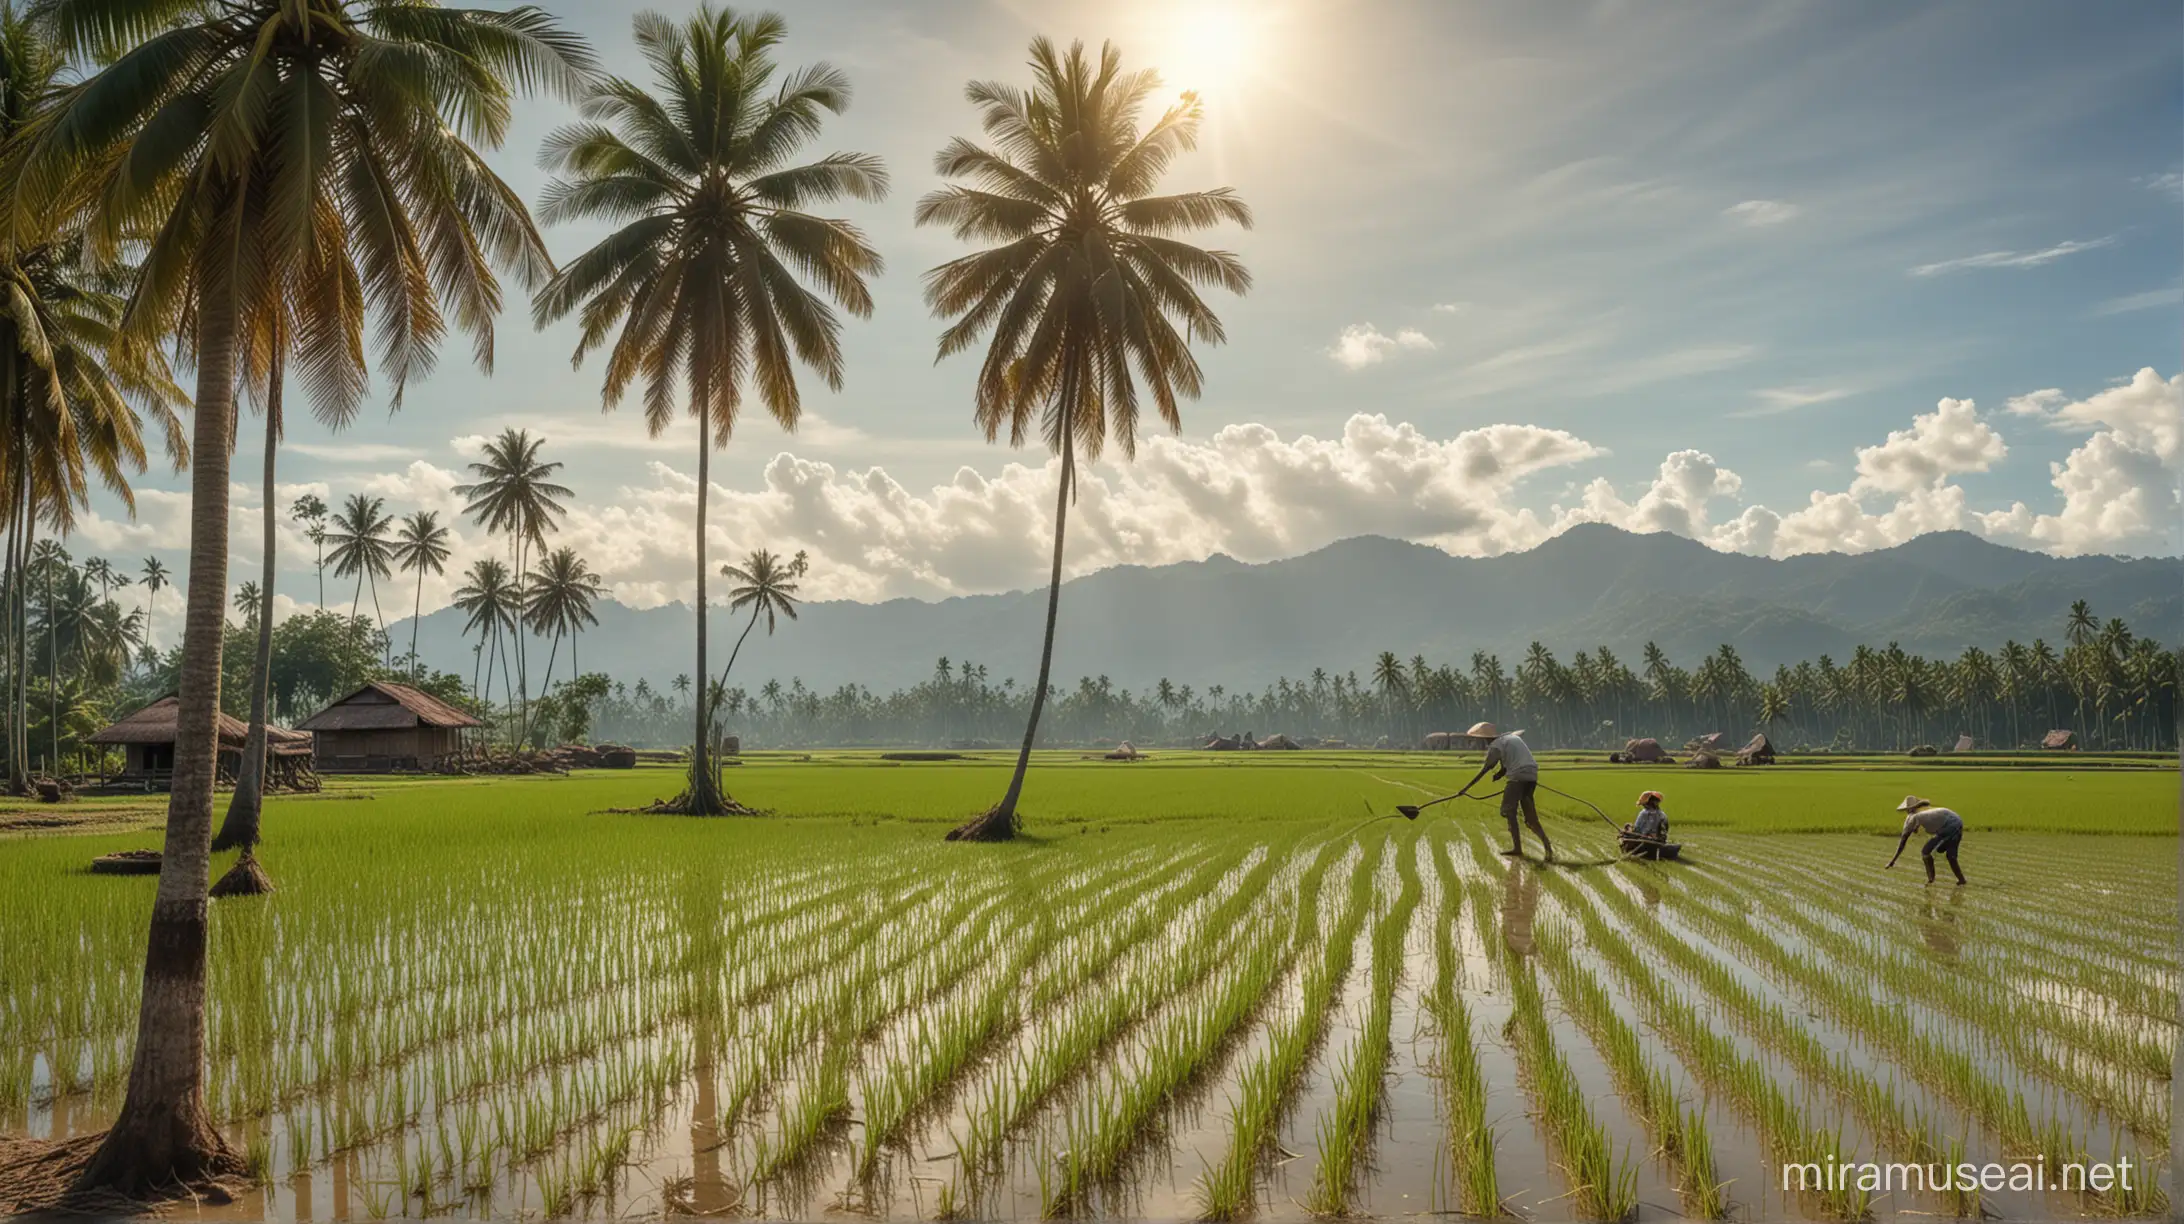 seorang petani Indonesia sedang menanam padi. Mereka dengan lincah nya menanam padi dan  pohon kelapa yang menjulang tinggi menambah indahnya pemandangan dan panas matahari yang sangat cerah, realistis ultra HDR extreme 